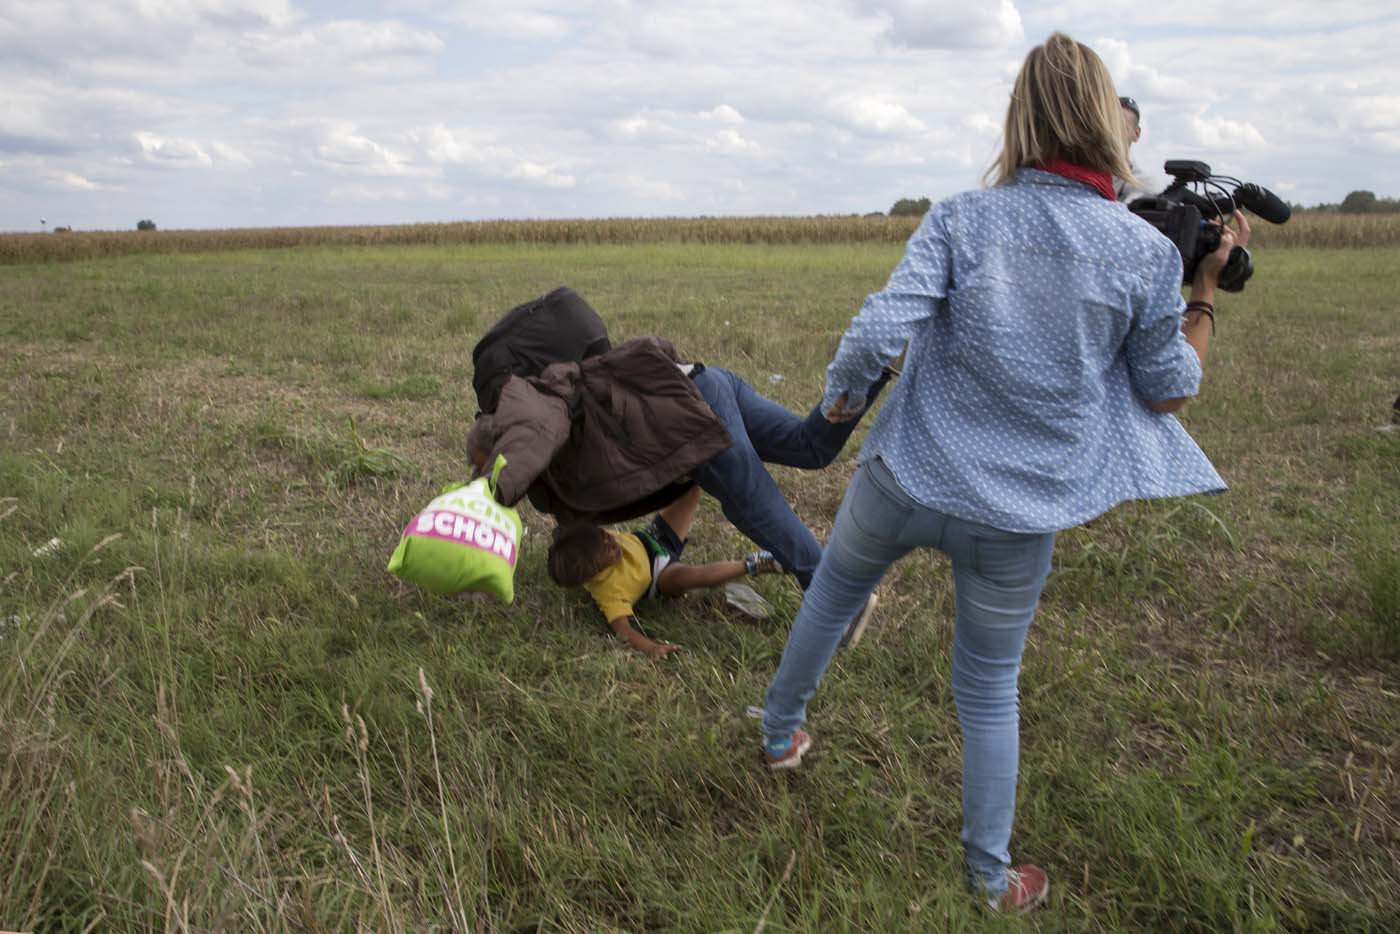 Petra Laszlo, la reportera que pateó a migrantes dice ahora que entró en pánico